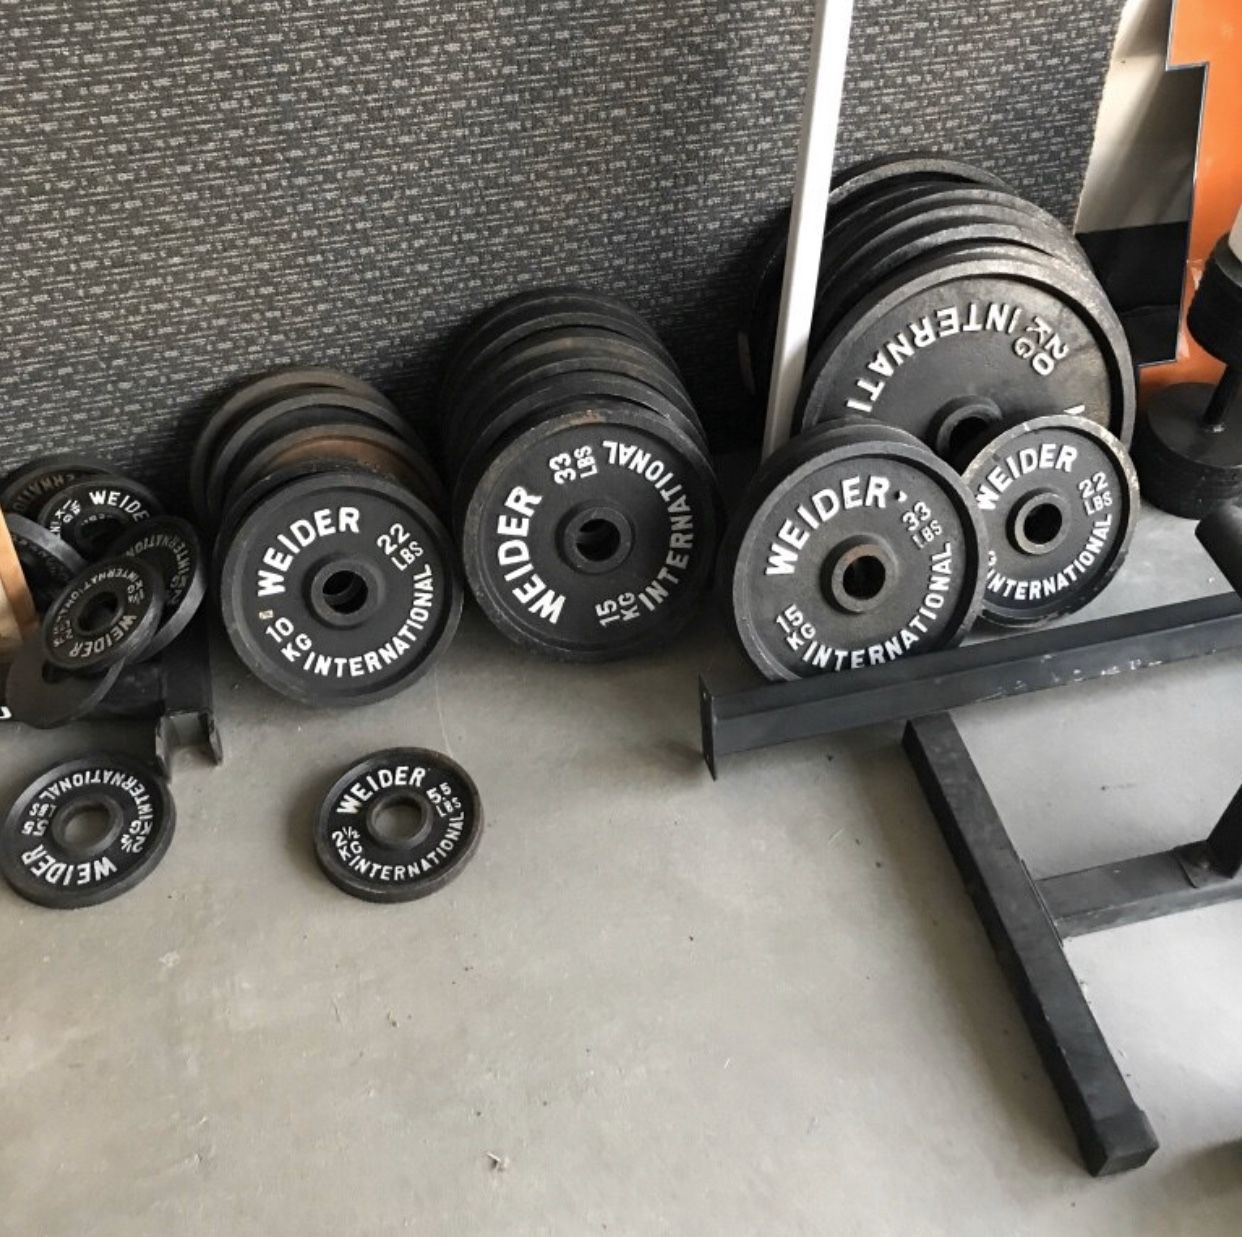 Weirder weights kilo plates